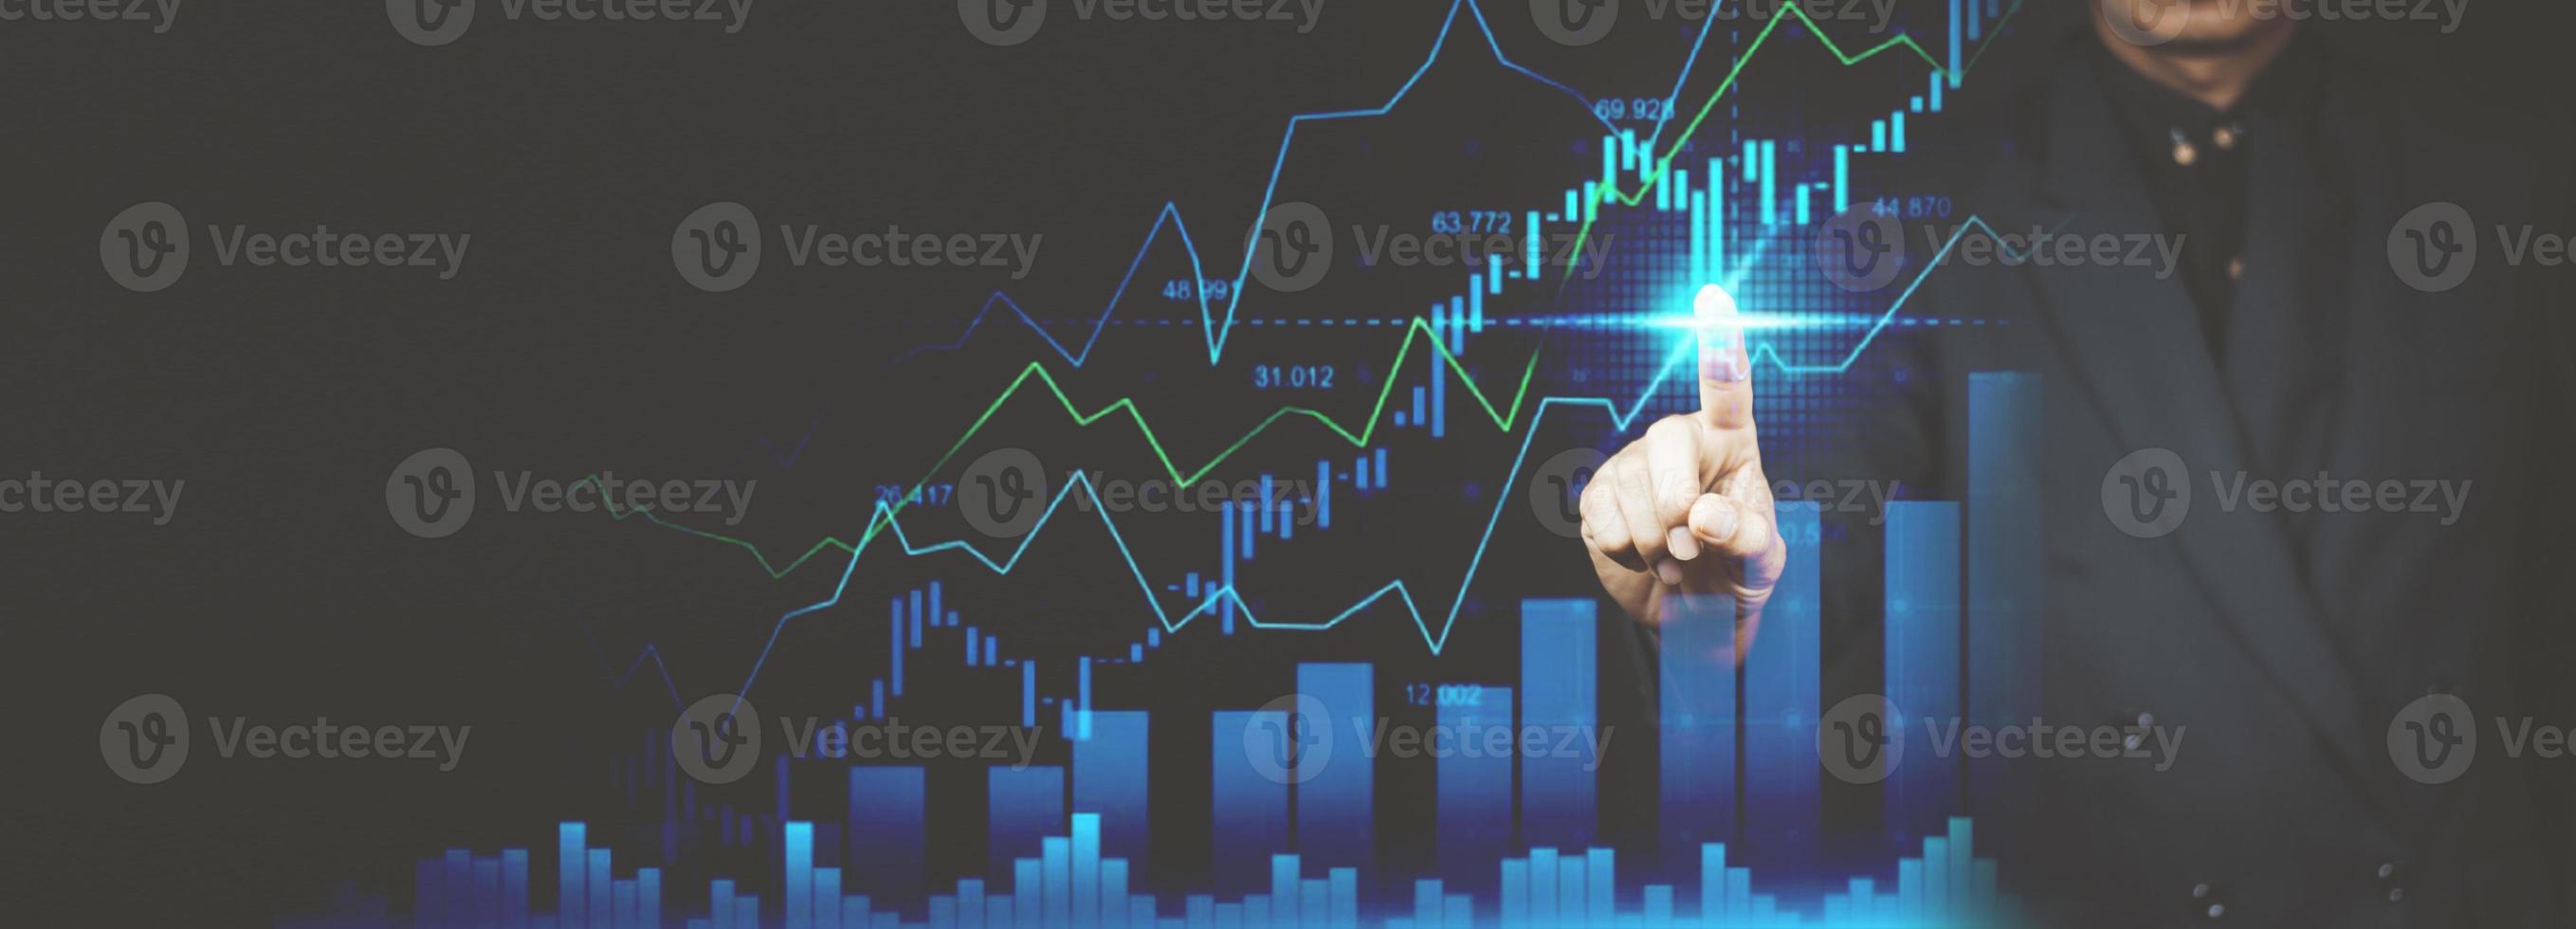 affärsfinansiering teknik och investeringshandel handlare investerare. aktiemarknadsinvesteringar fonder och digitala tillgångar. affärsman analysera valutahandel graf finansiella data. foto